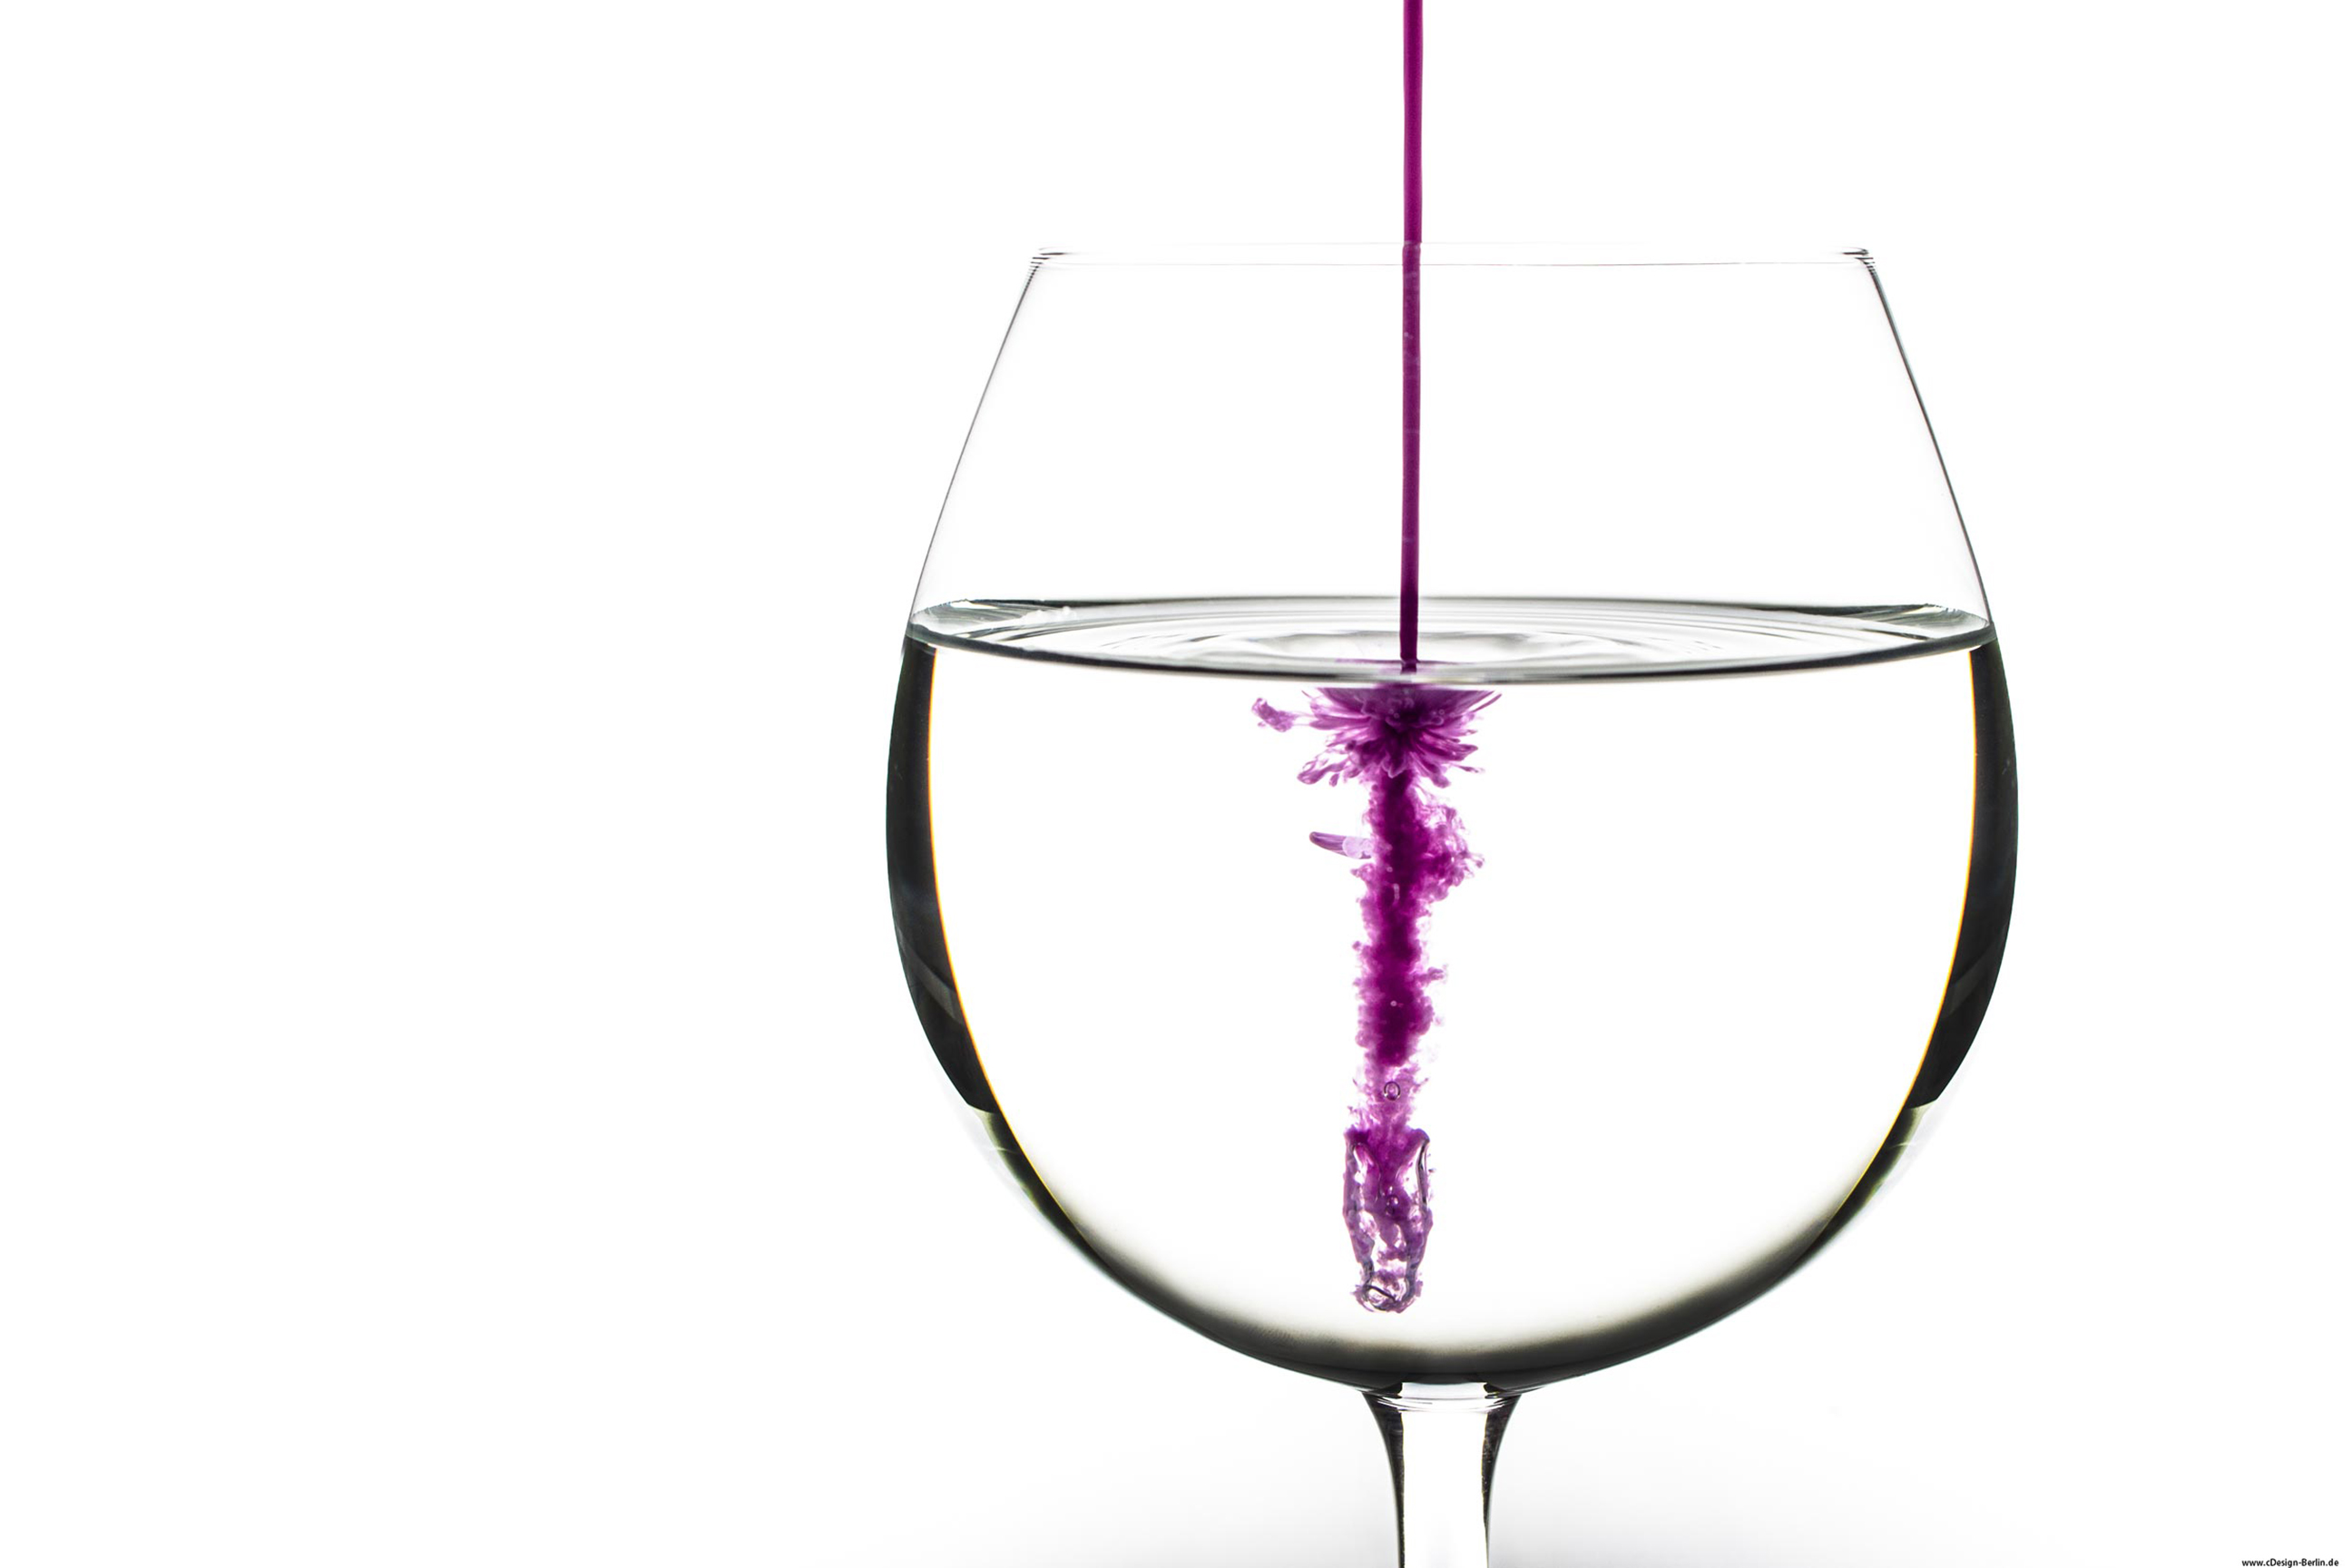 Bei diesem Bild handelt es sich um ein Weinglas, welches dreiviertel mit Wasser gefüllt wurde. Der Hintergrund ist weiß gehalten. Von oben kommt ein lila farbiger Strahl und dringt in das Wasser ein. Beim Eindringen, explodiert die Farbe in verschiedene Richtungen und entwickelt dabei ein eigenes Gebilde, in diesem Fall sieht es einer Blume ähnlich.(Studioaufnahme)